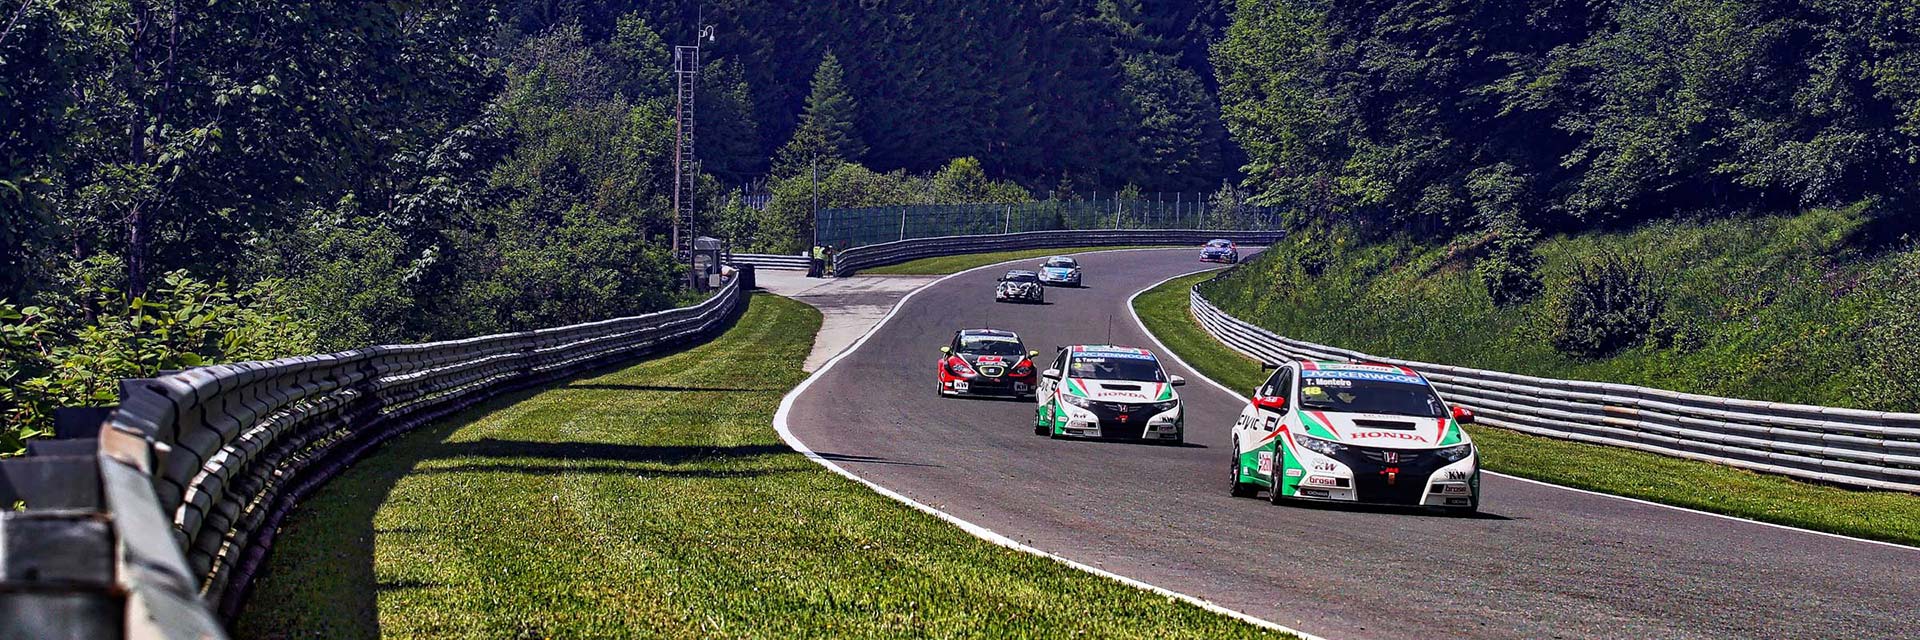 GEDLICH Racing - Racetrack Salzburgring